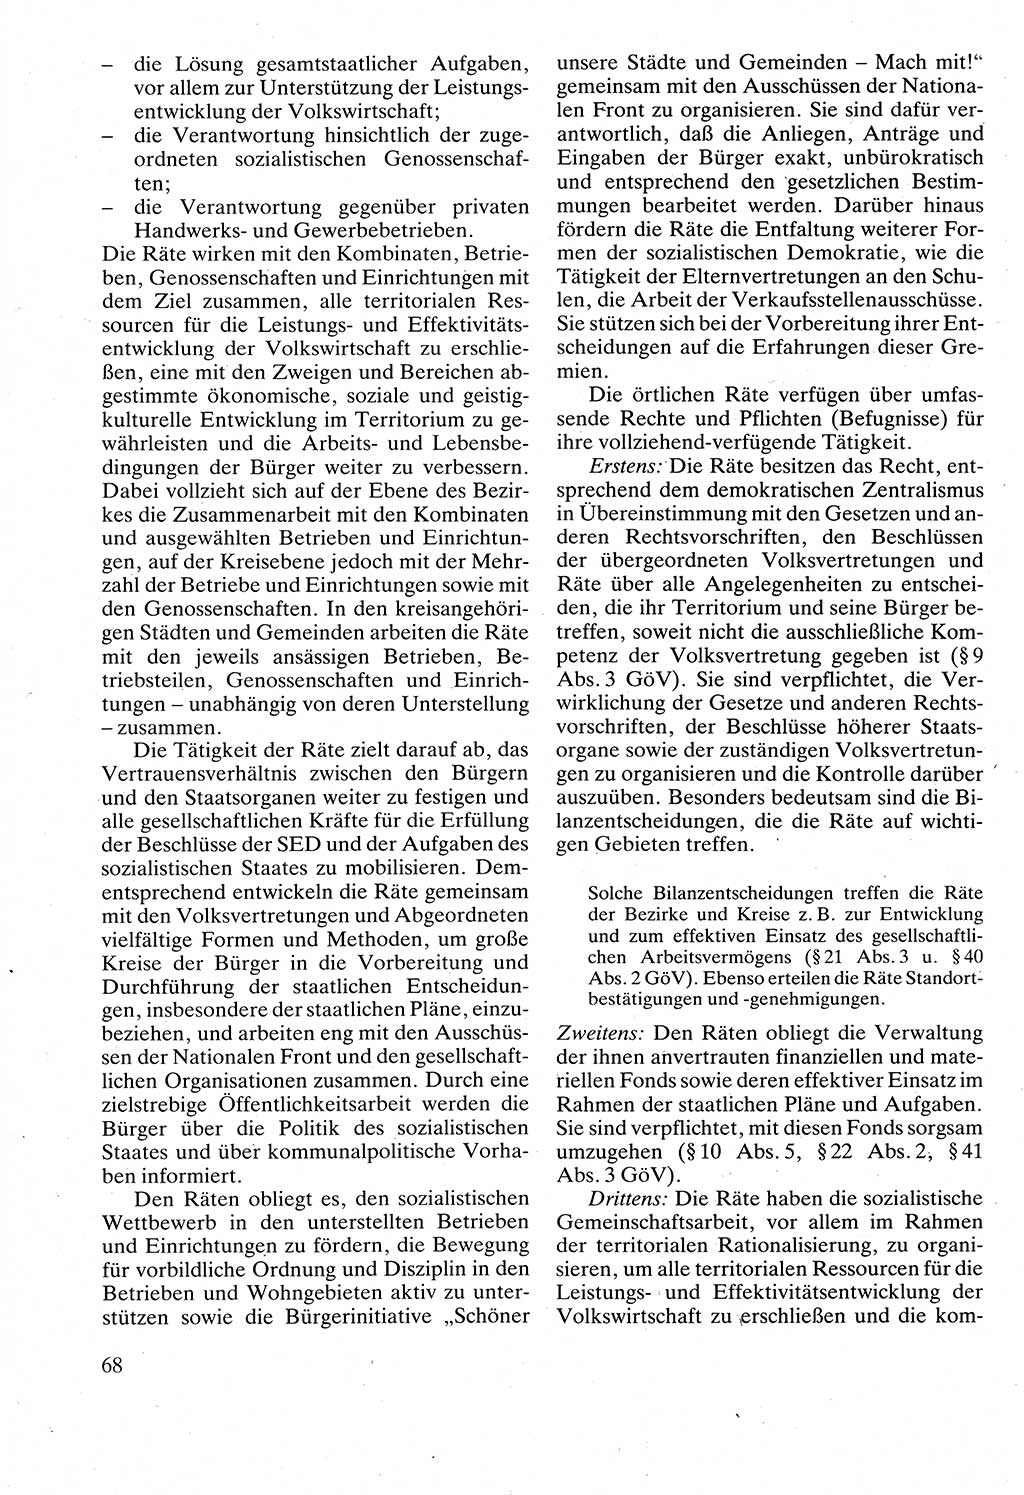 Verwaltungsrecht [Deutsche Demokratische Republik (DDR)], Lehrbuch 1988, Seite 68 (Verw.-R. DDR Lb. 1988, S. 68)